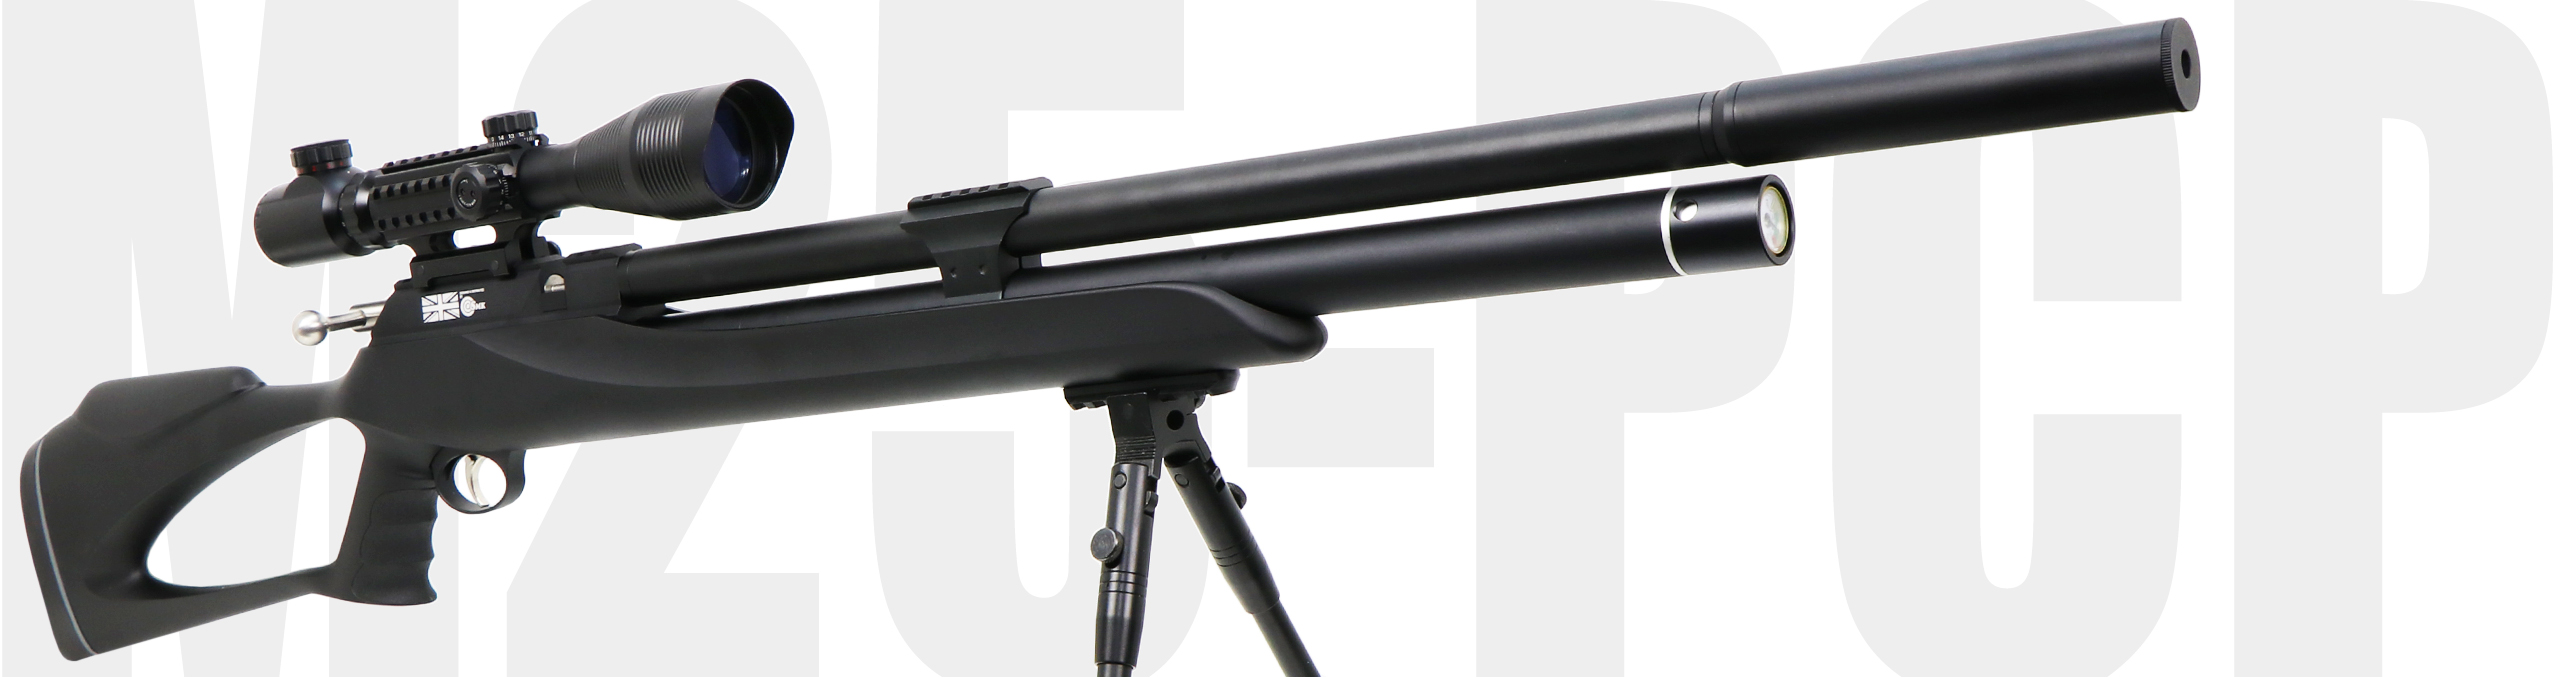 Snowpeak M25 PCP Airgun 5.5MM .22